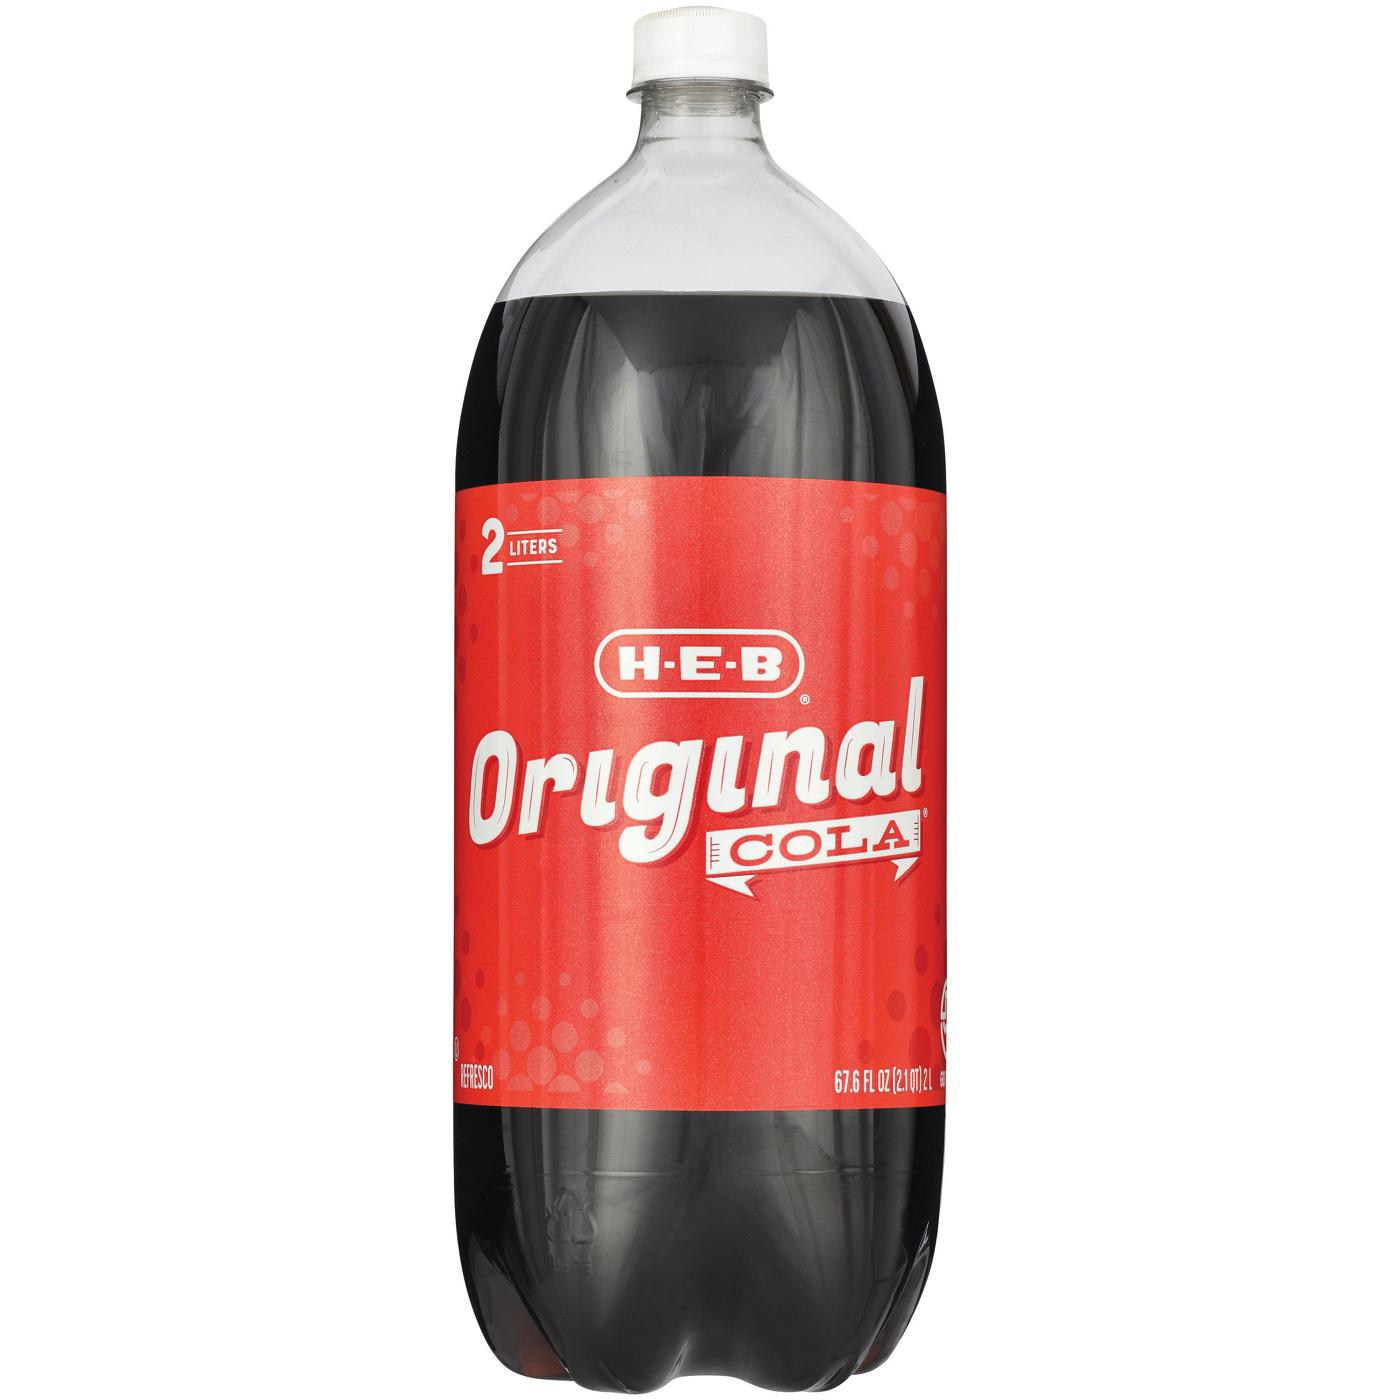 H-E-B Original Cola Soda; image 2 of 2